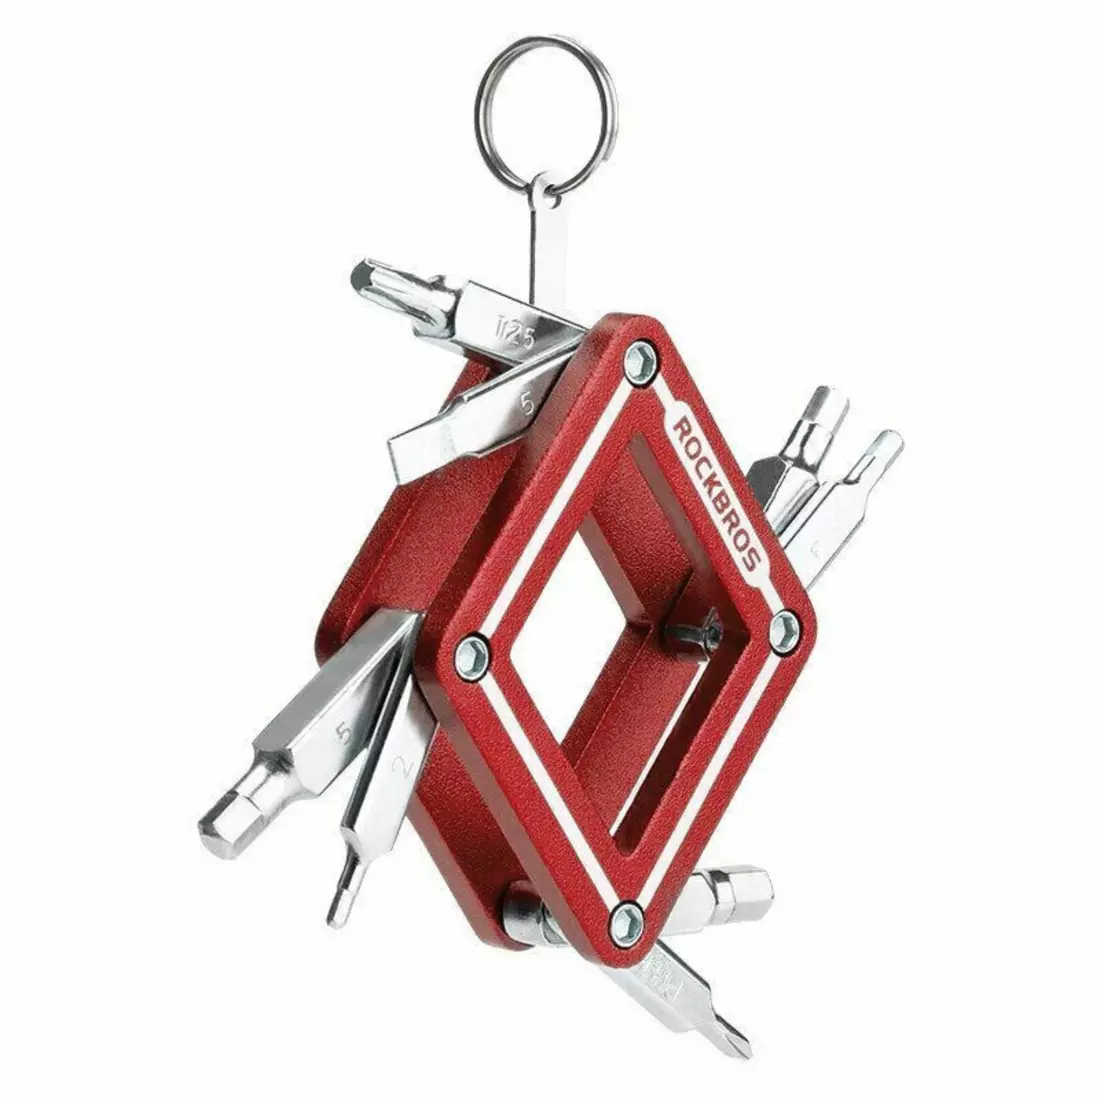 Rockbros zestaw kluczy multitool 8 funkcji, czerwony 43210018001